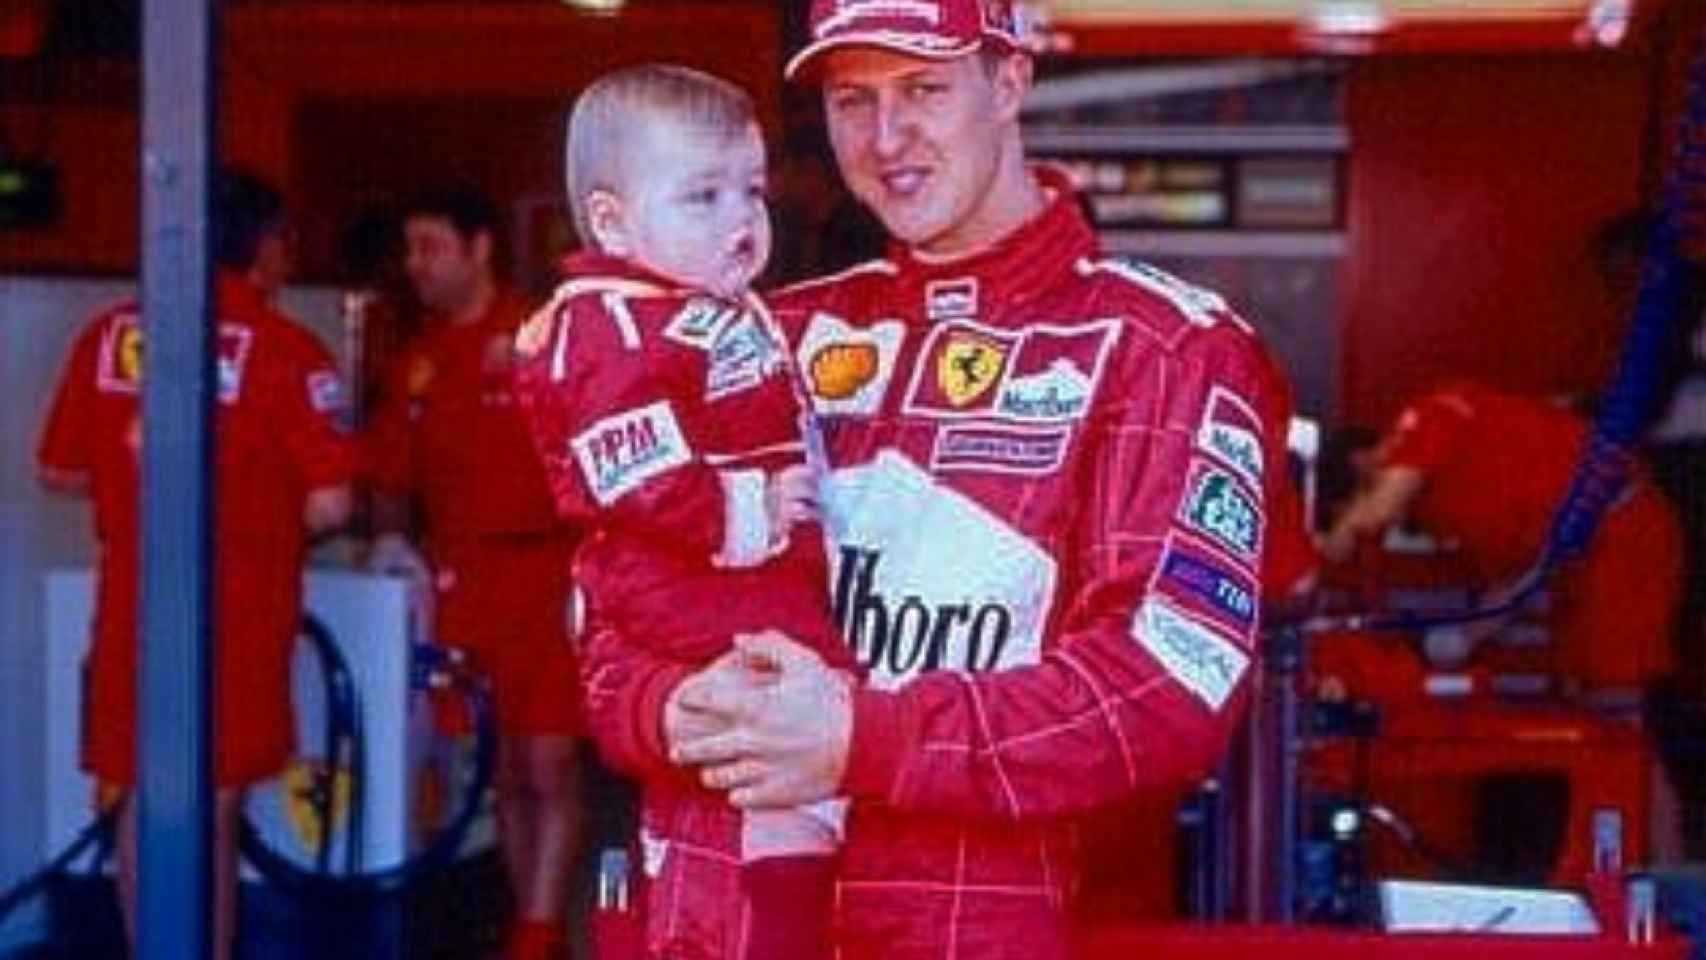 Michael Schumacher con su hijo Mick en sus brazos